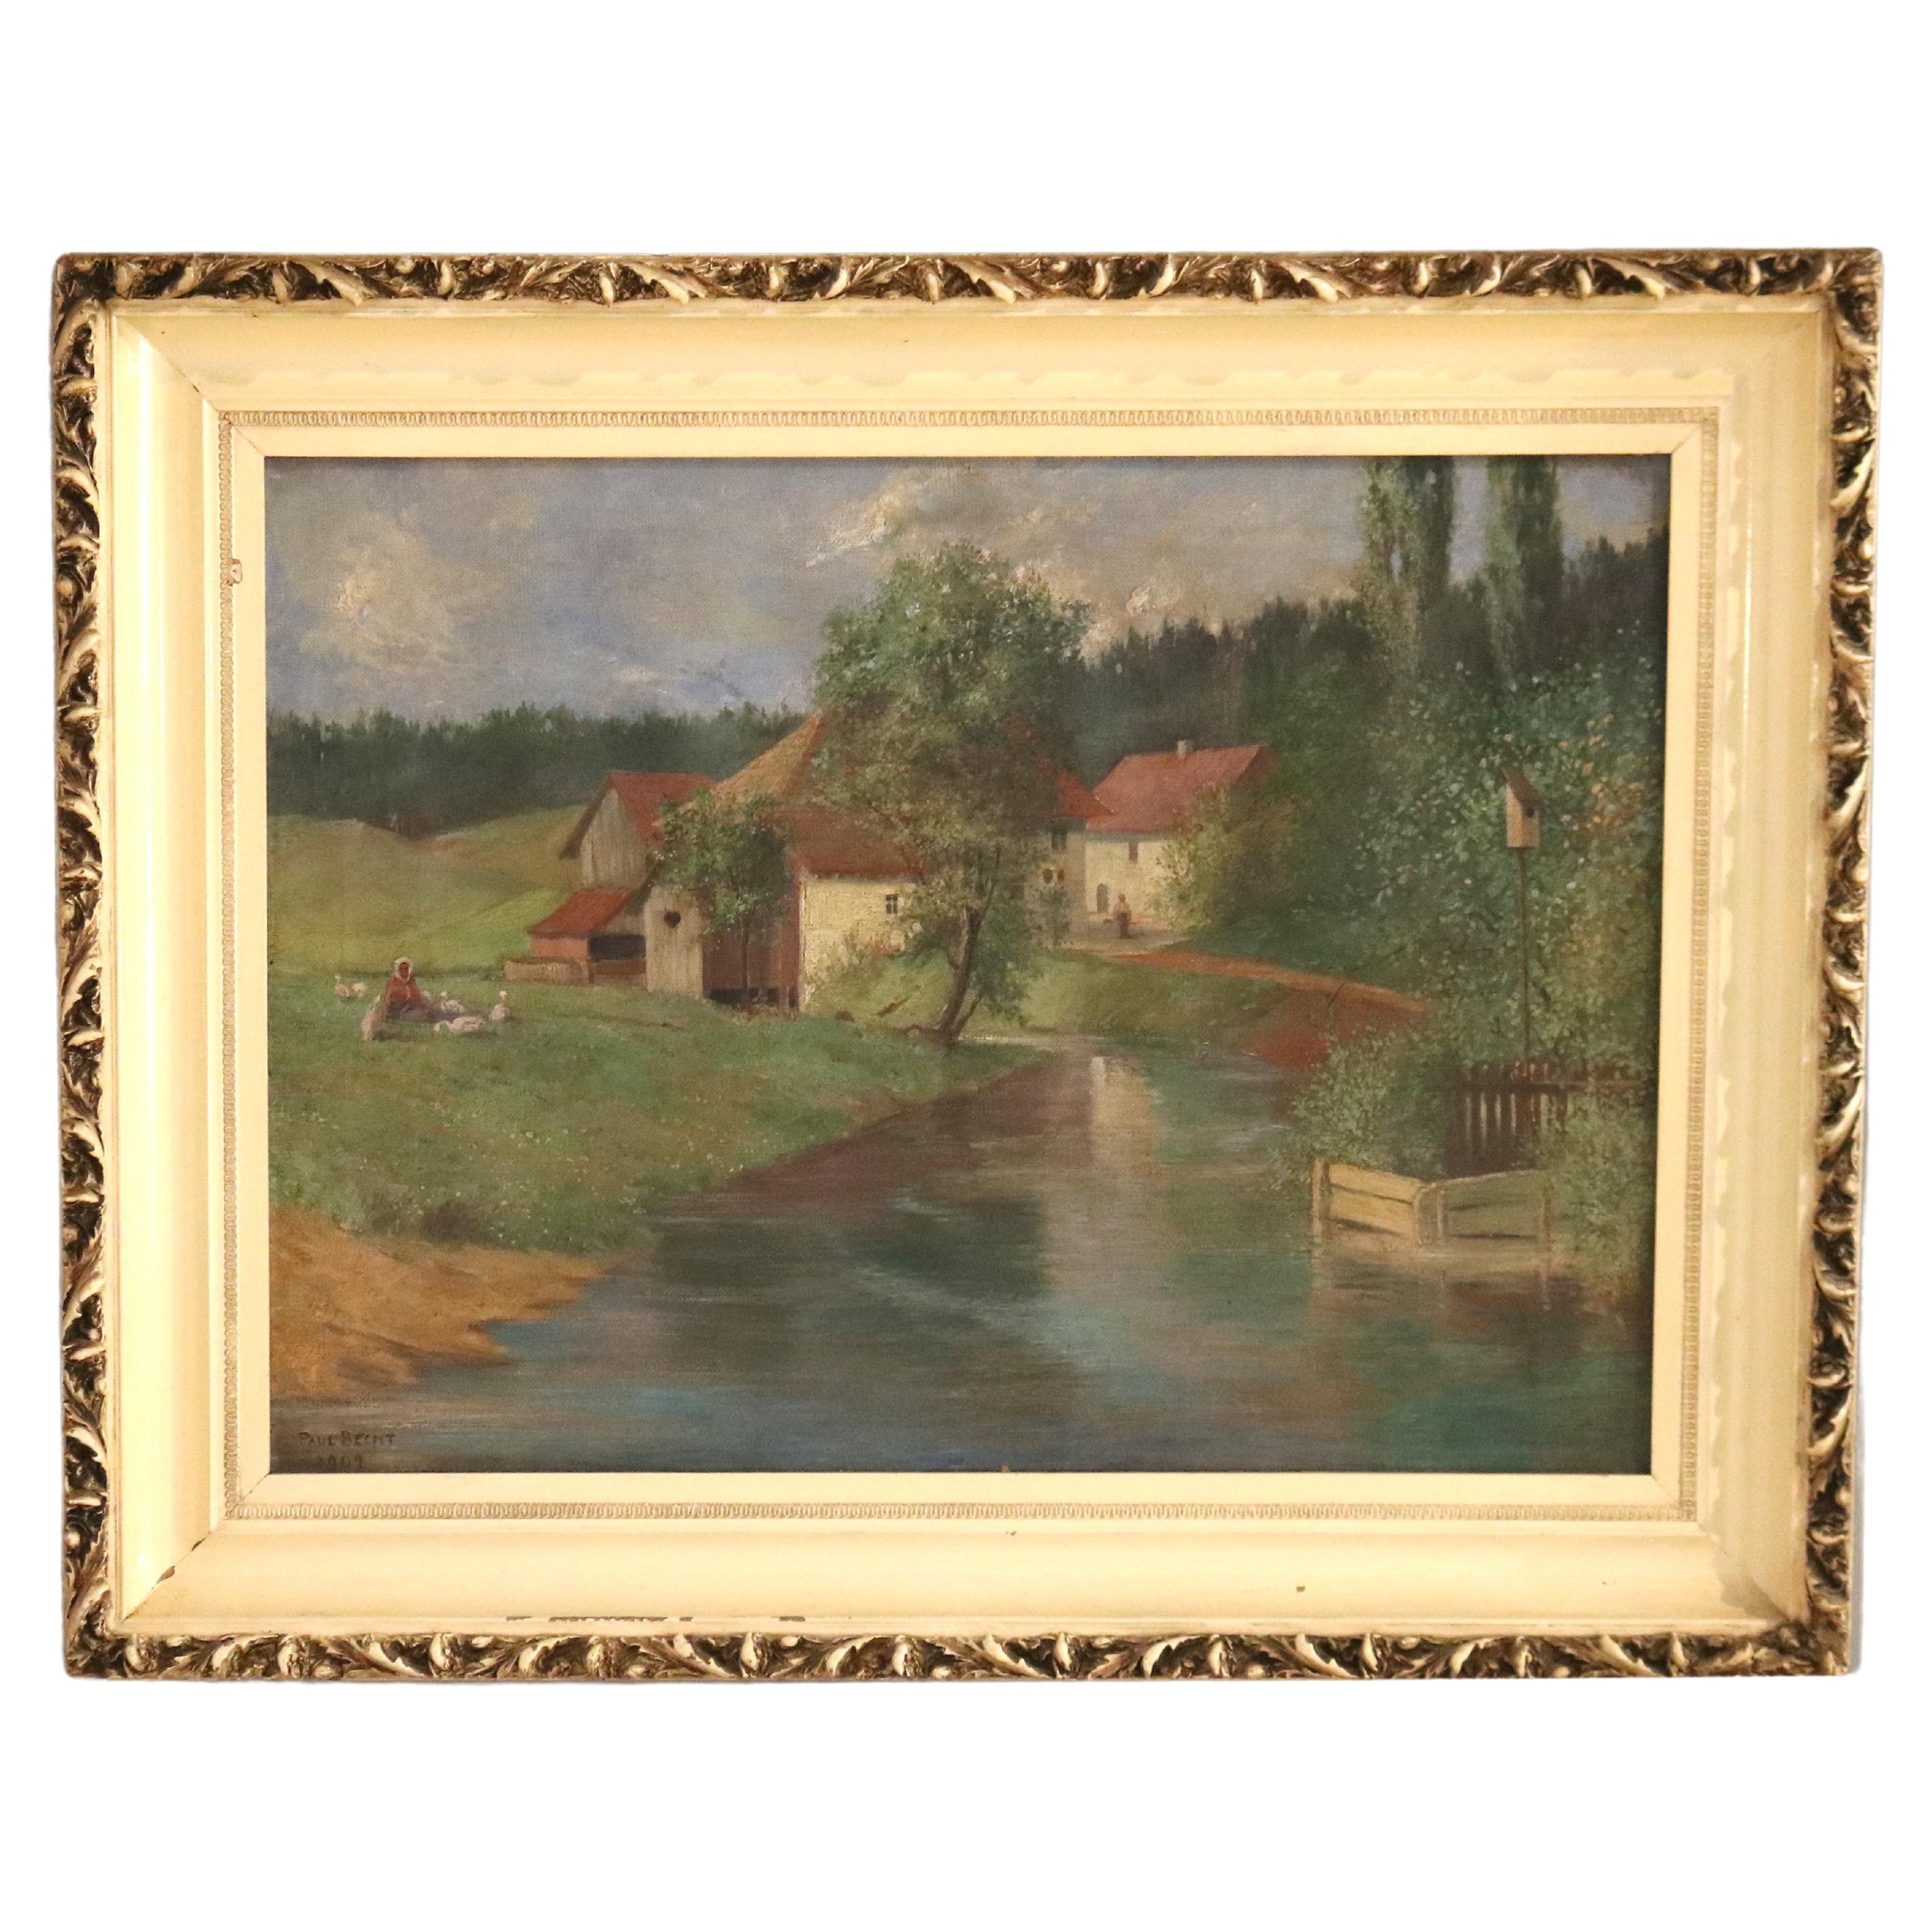 Ancienne peinture de paysage sur toile, scène de ferme, signée Brecht, 1907